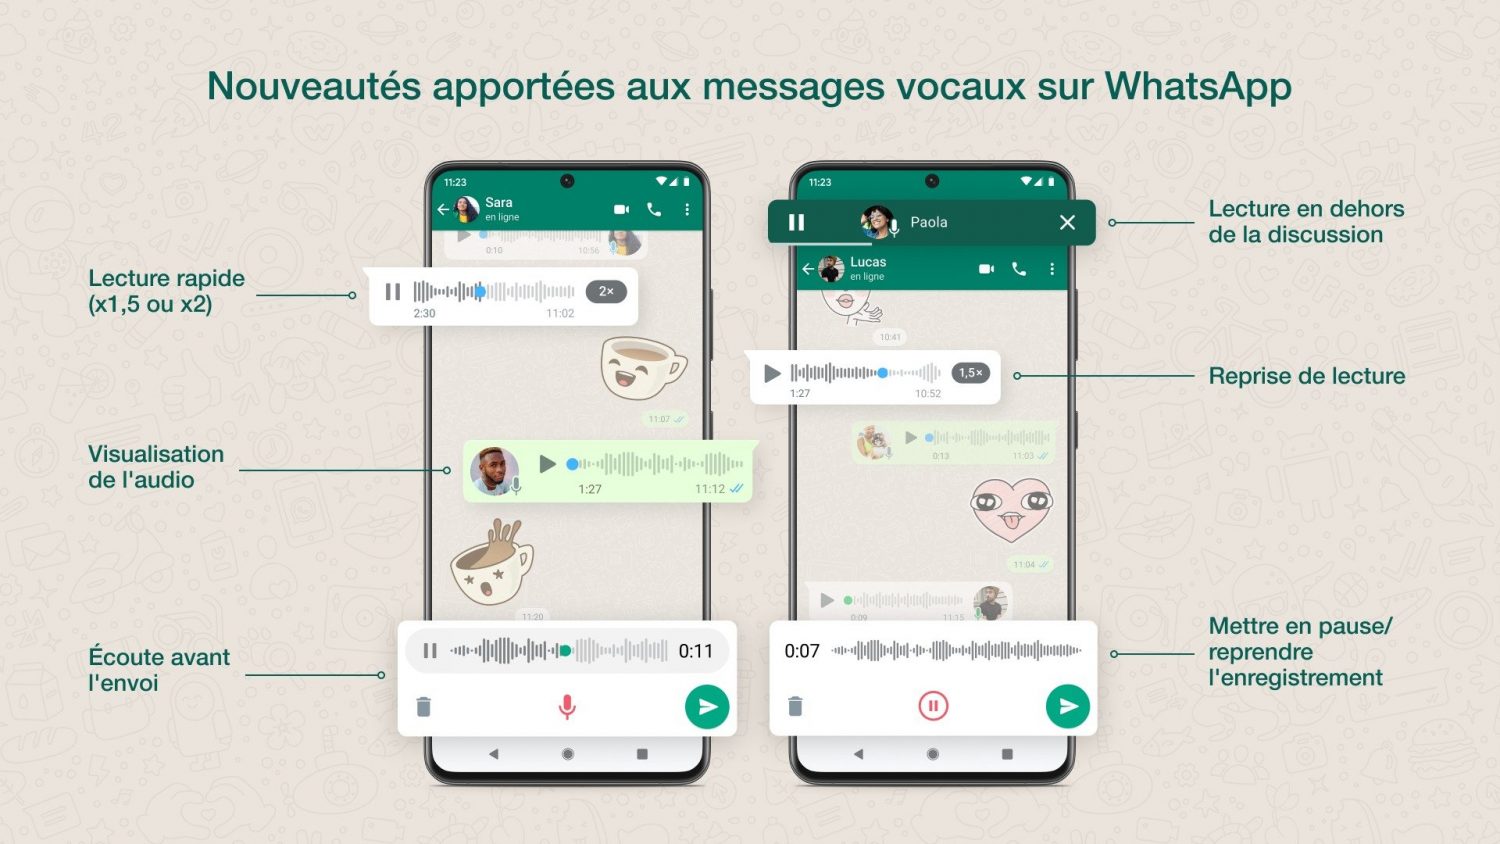 whatsapp-messages-vocaux-nouveautes